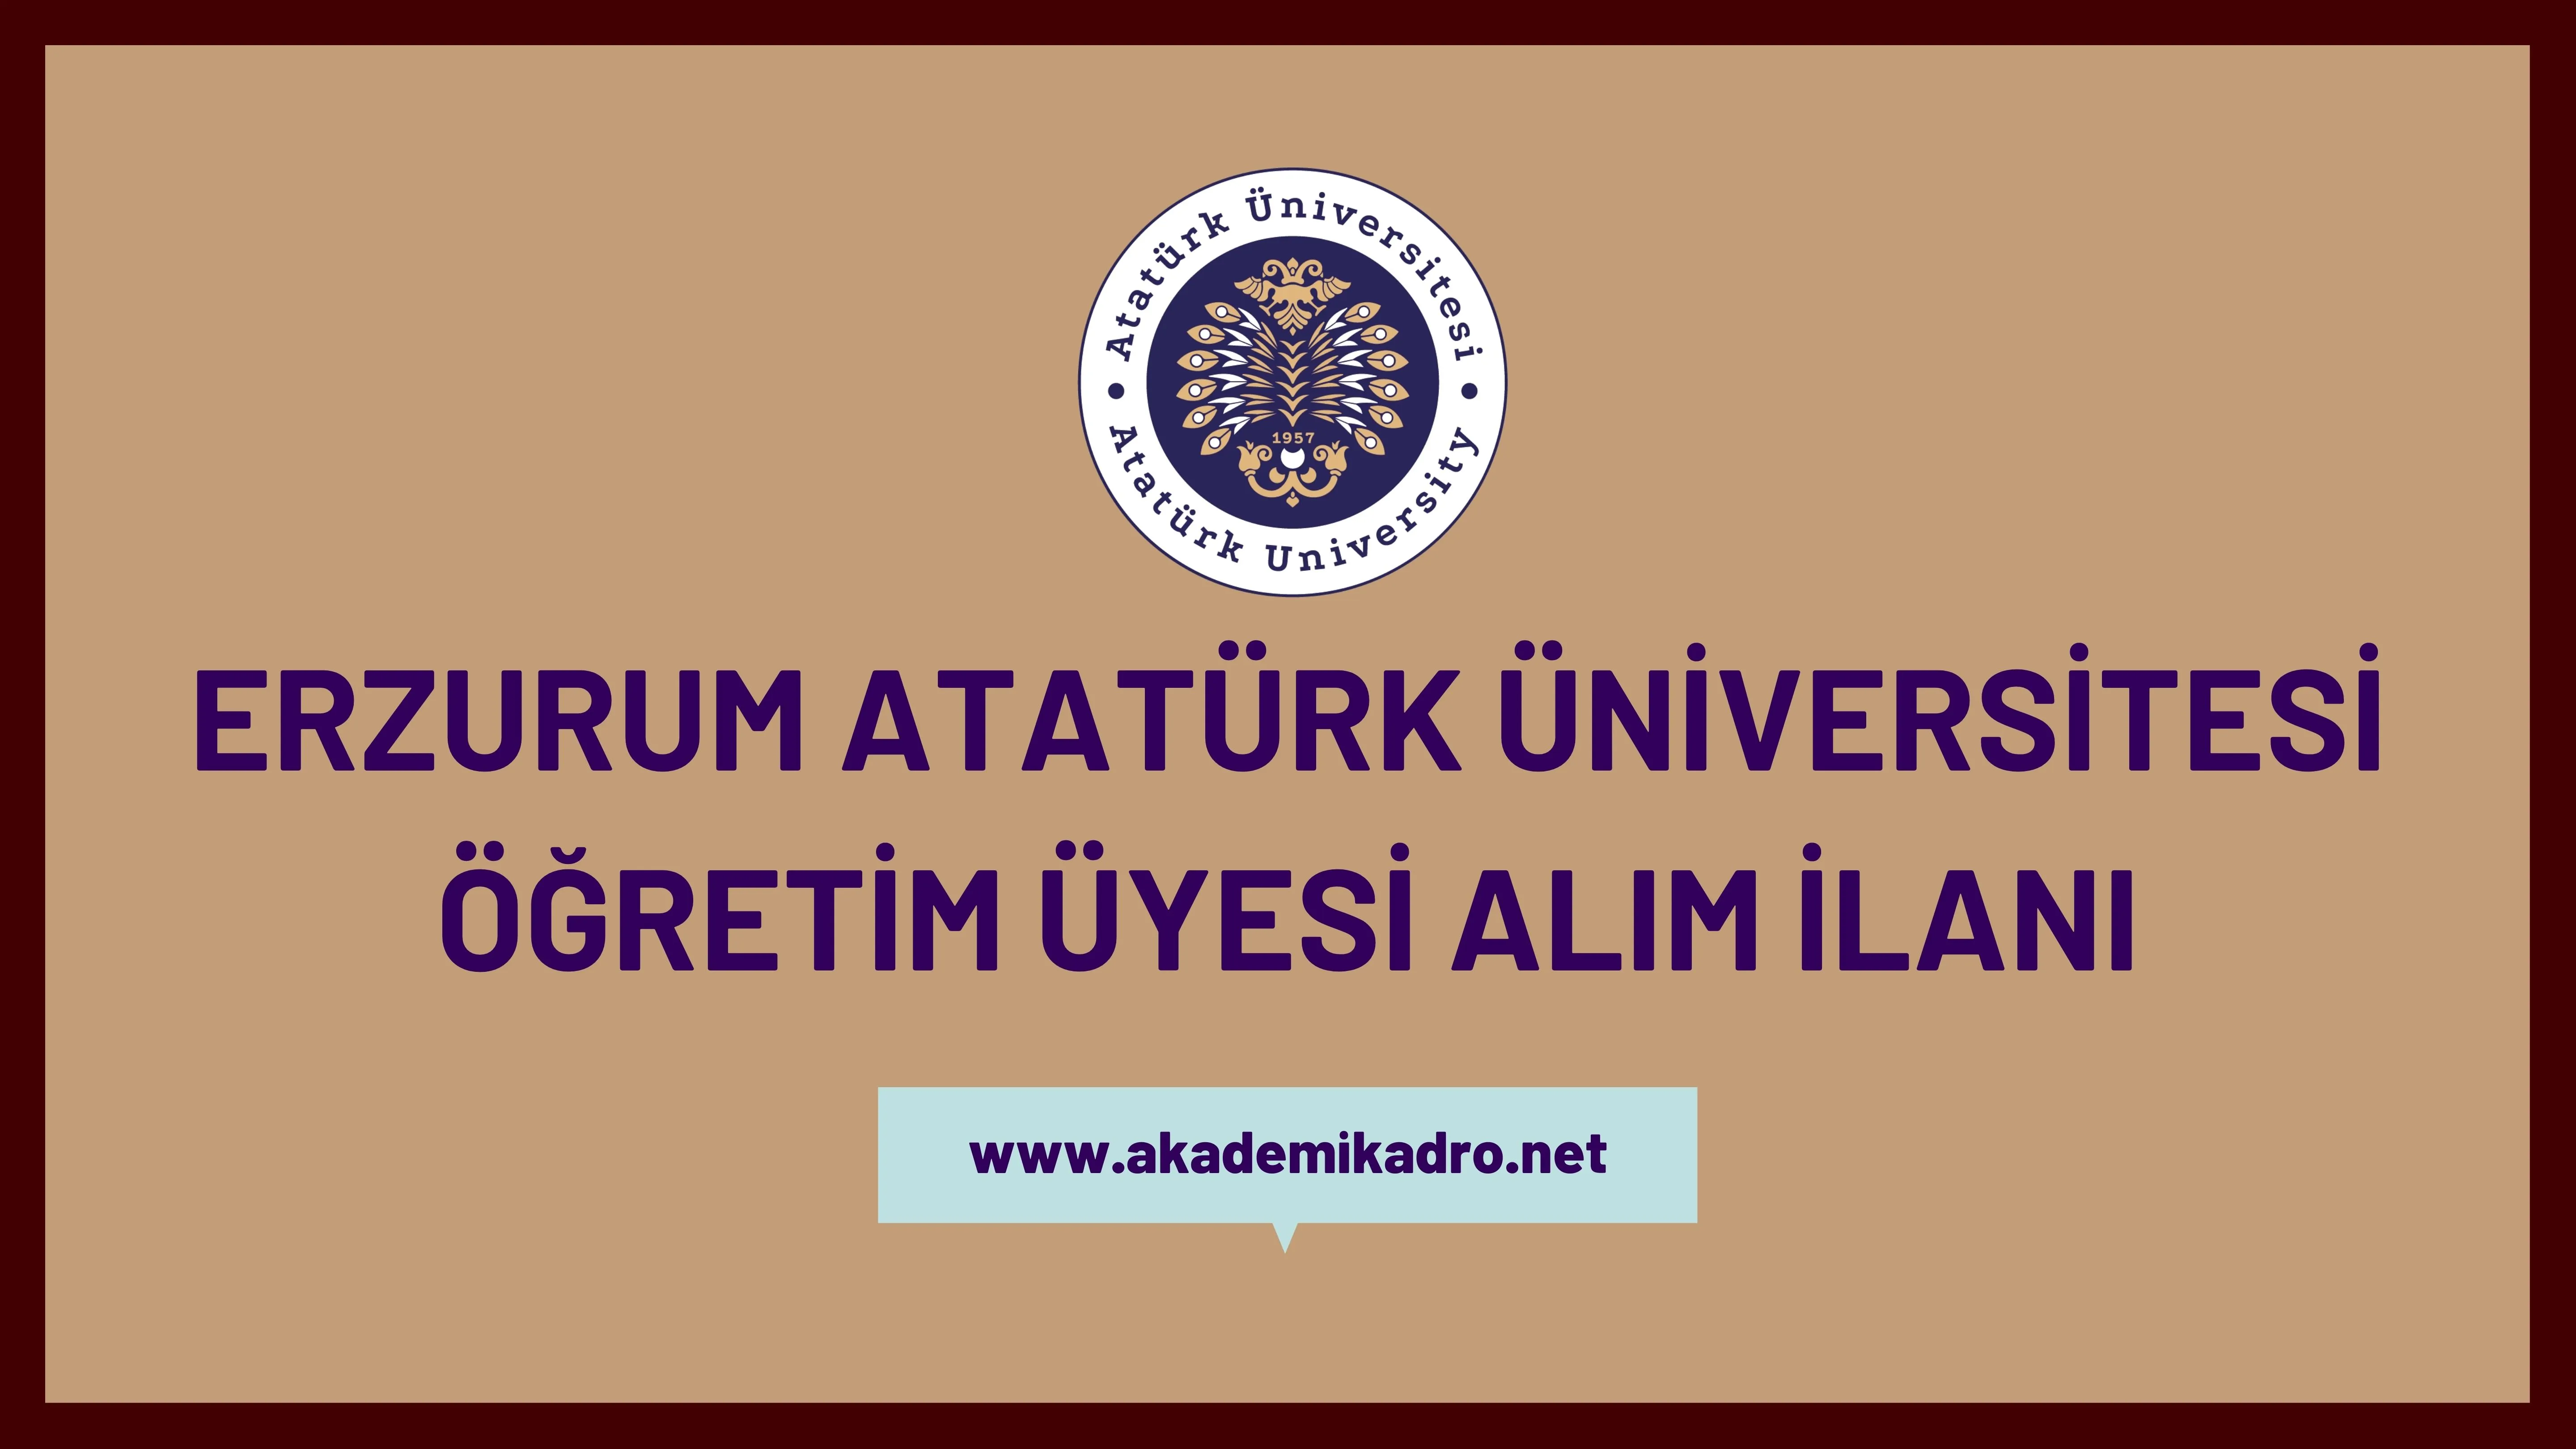 Atatürk Üniversitesi birçok alandan 40 Öğretim üyesi alacak.